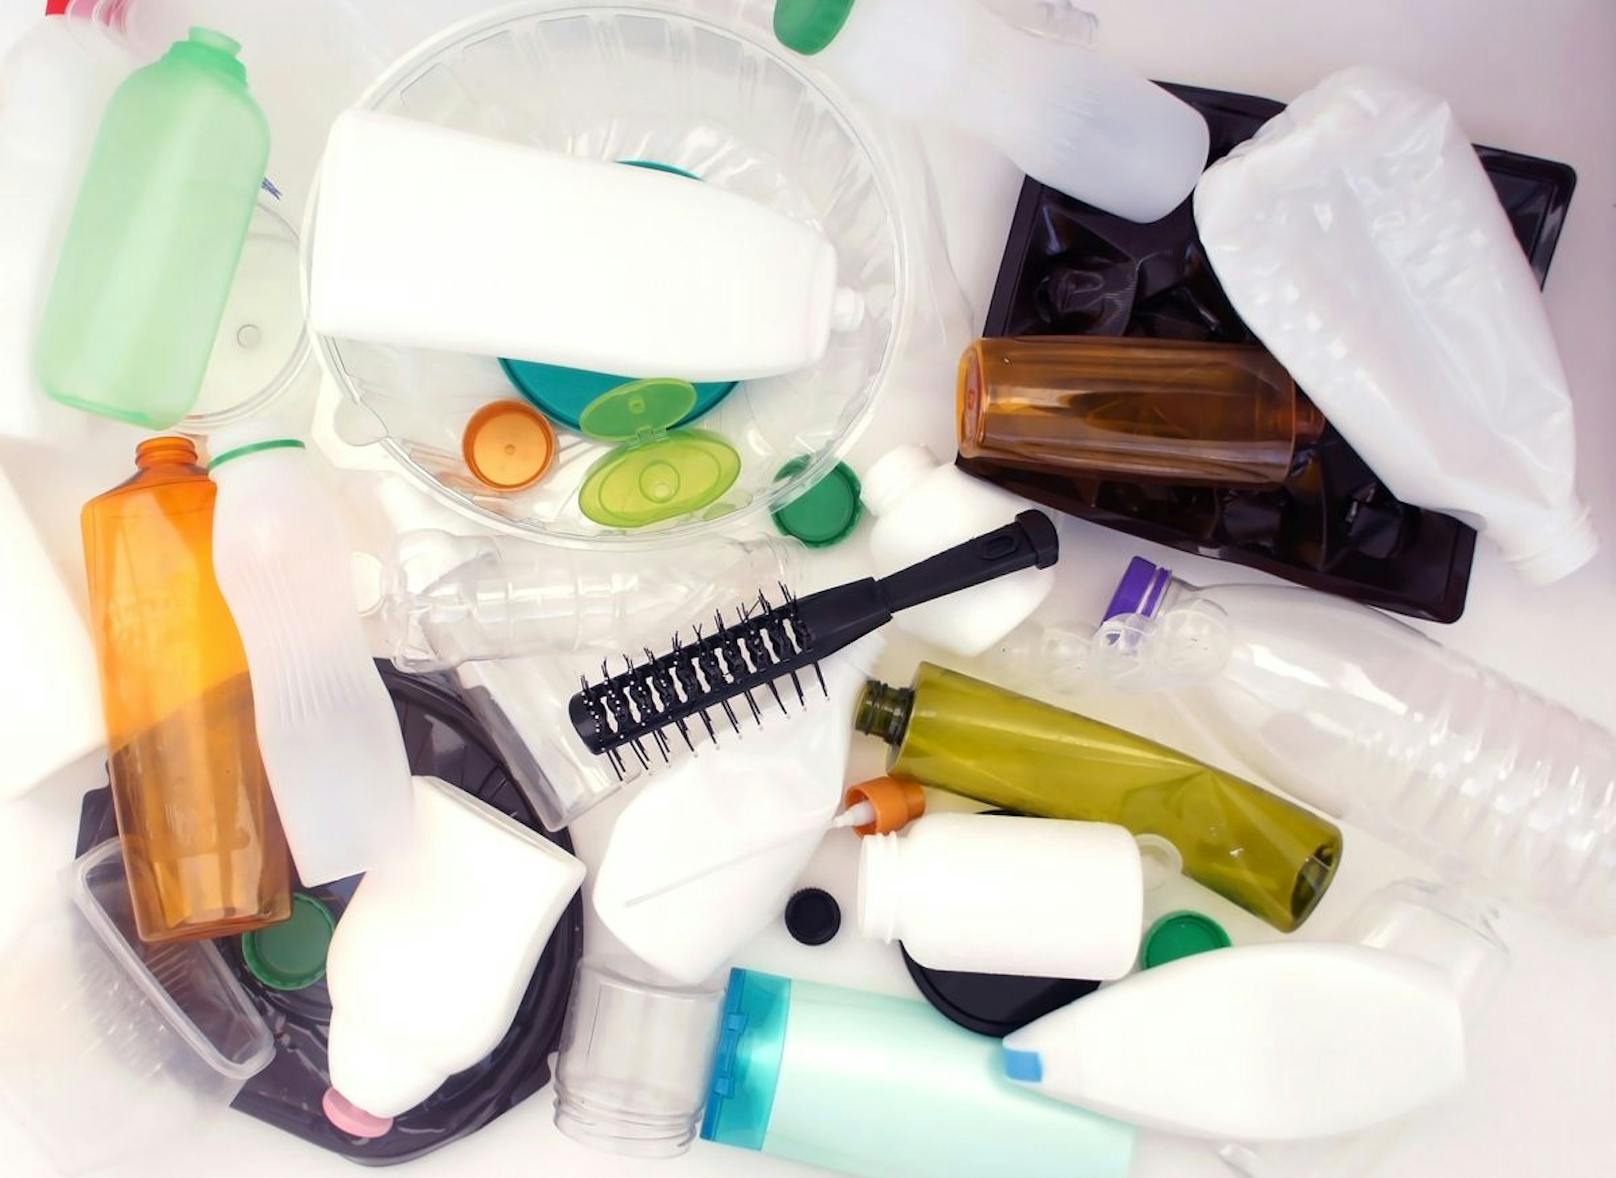 Sobald die Puderdose oder dein Mascara leer sind heißt es: "Ab in den Müll!" Aber deine leeren Behälter gehören auf andere Weise entsorgt. 